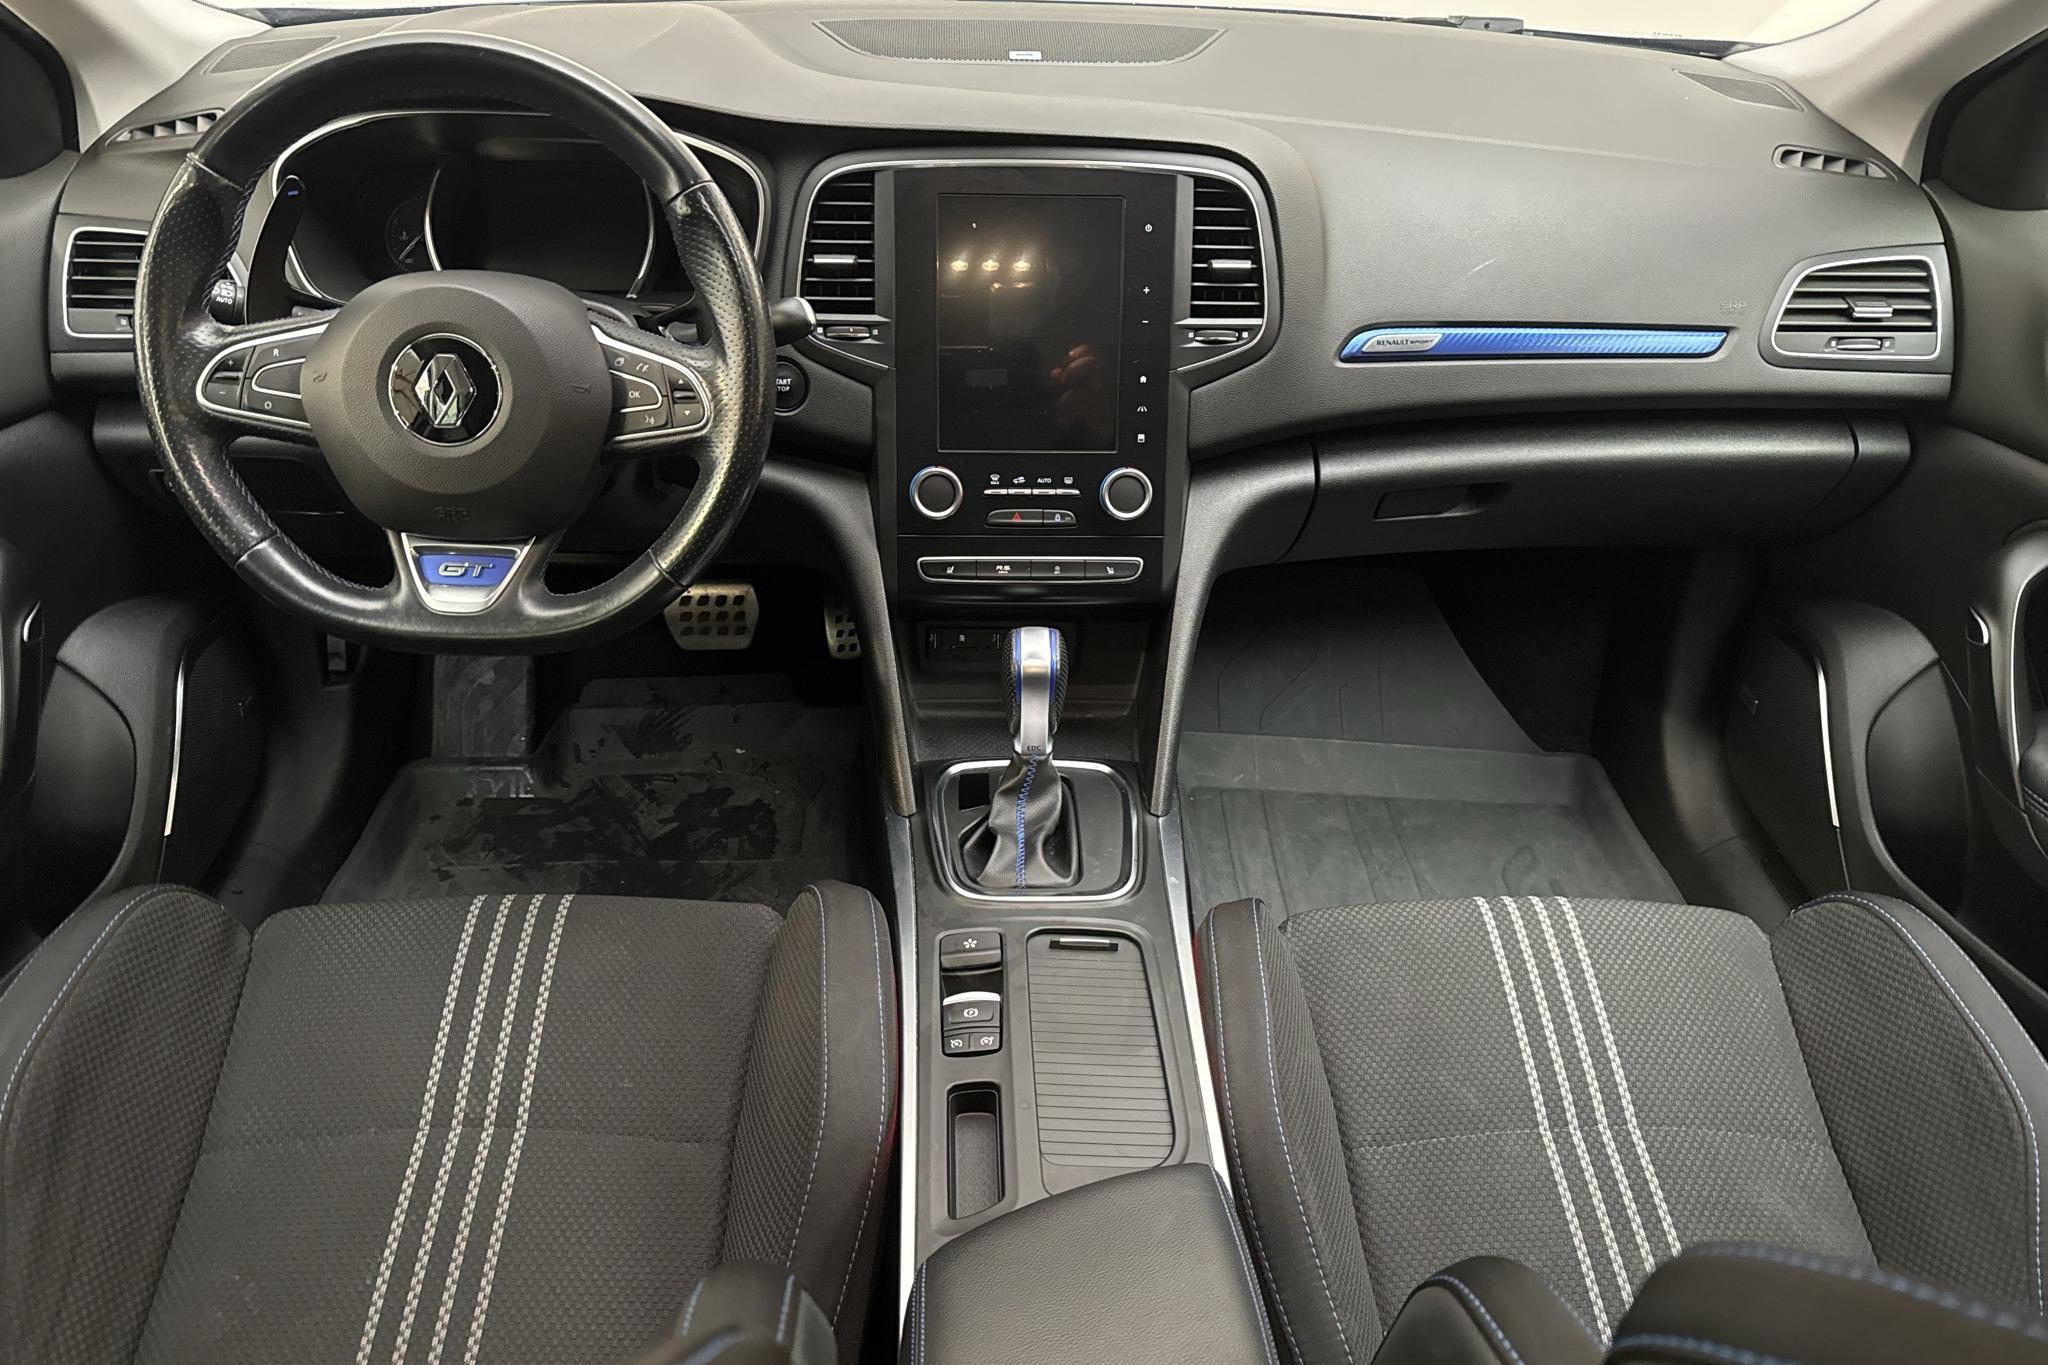 Renault Mégane 1.6 TCe GT 5dr (205hk) - 62 080 km - Automatic - 2018